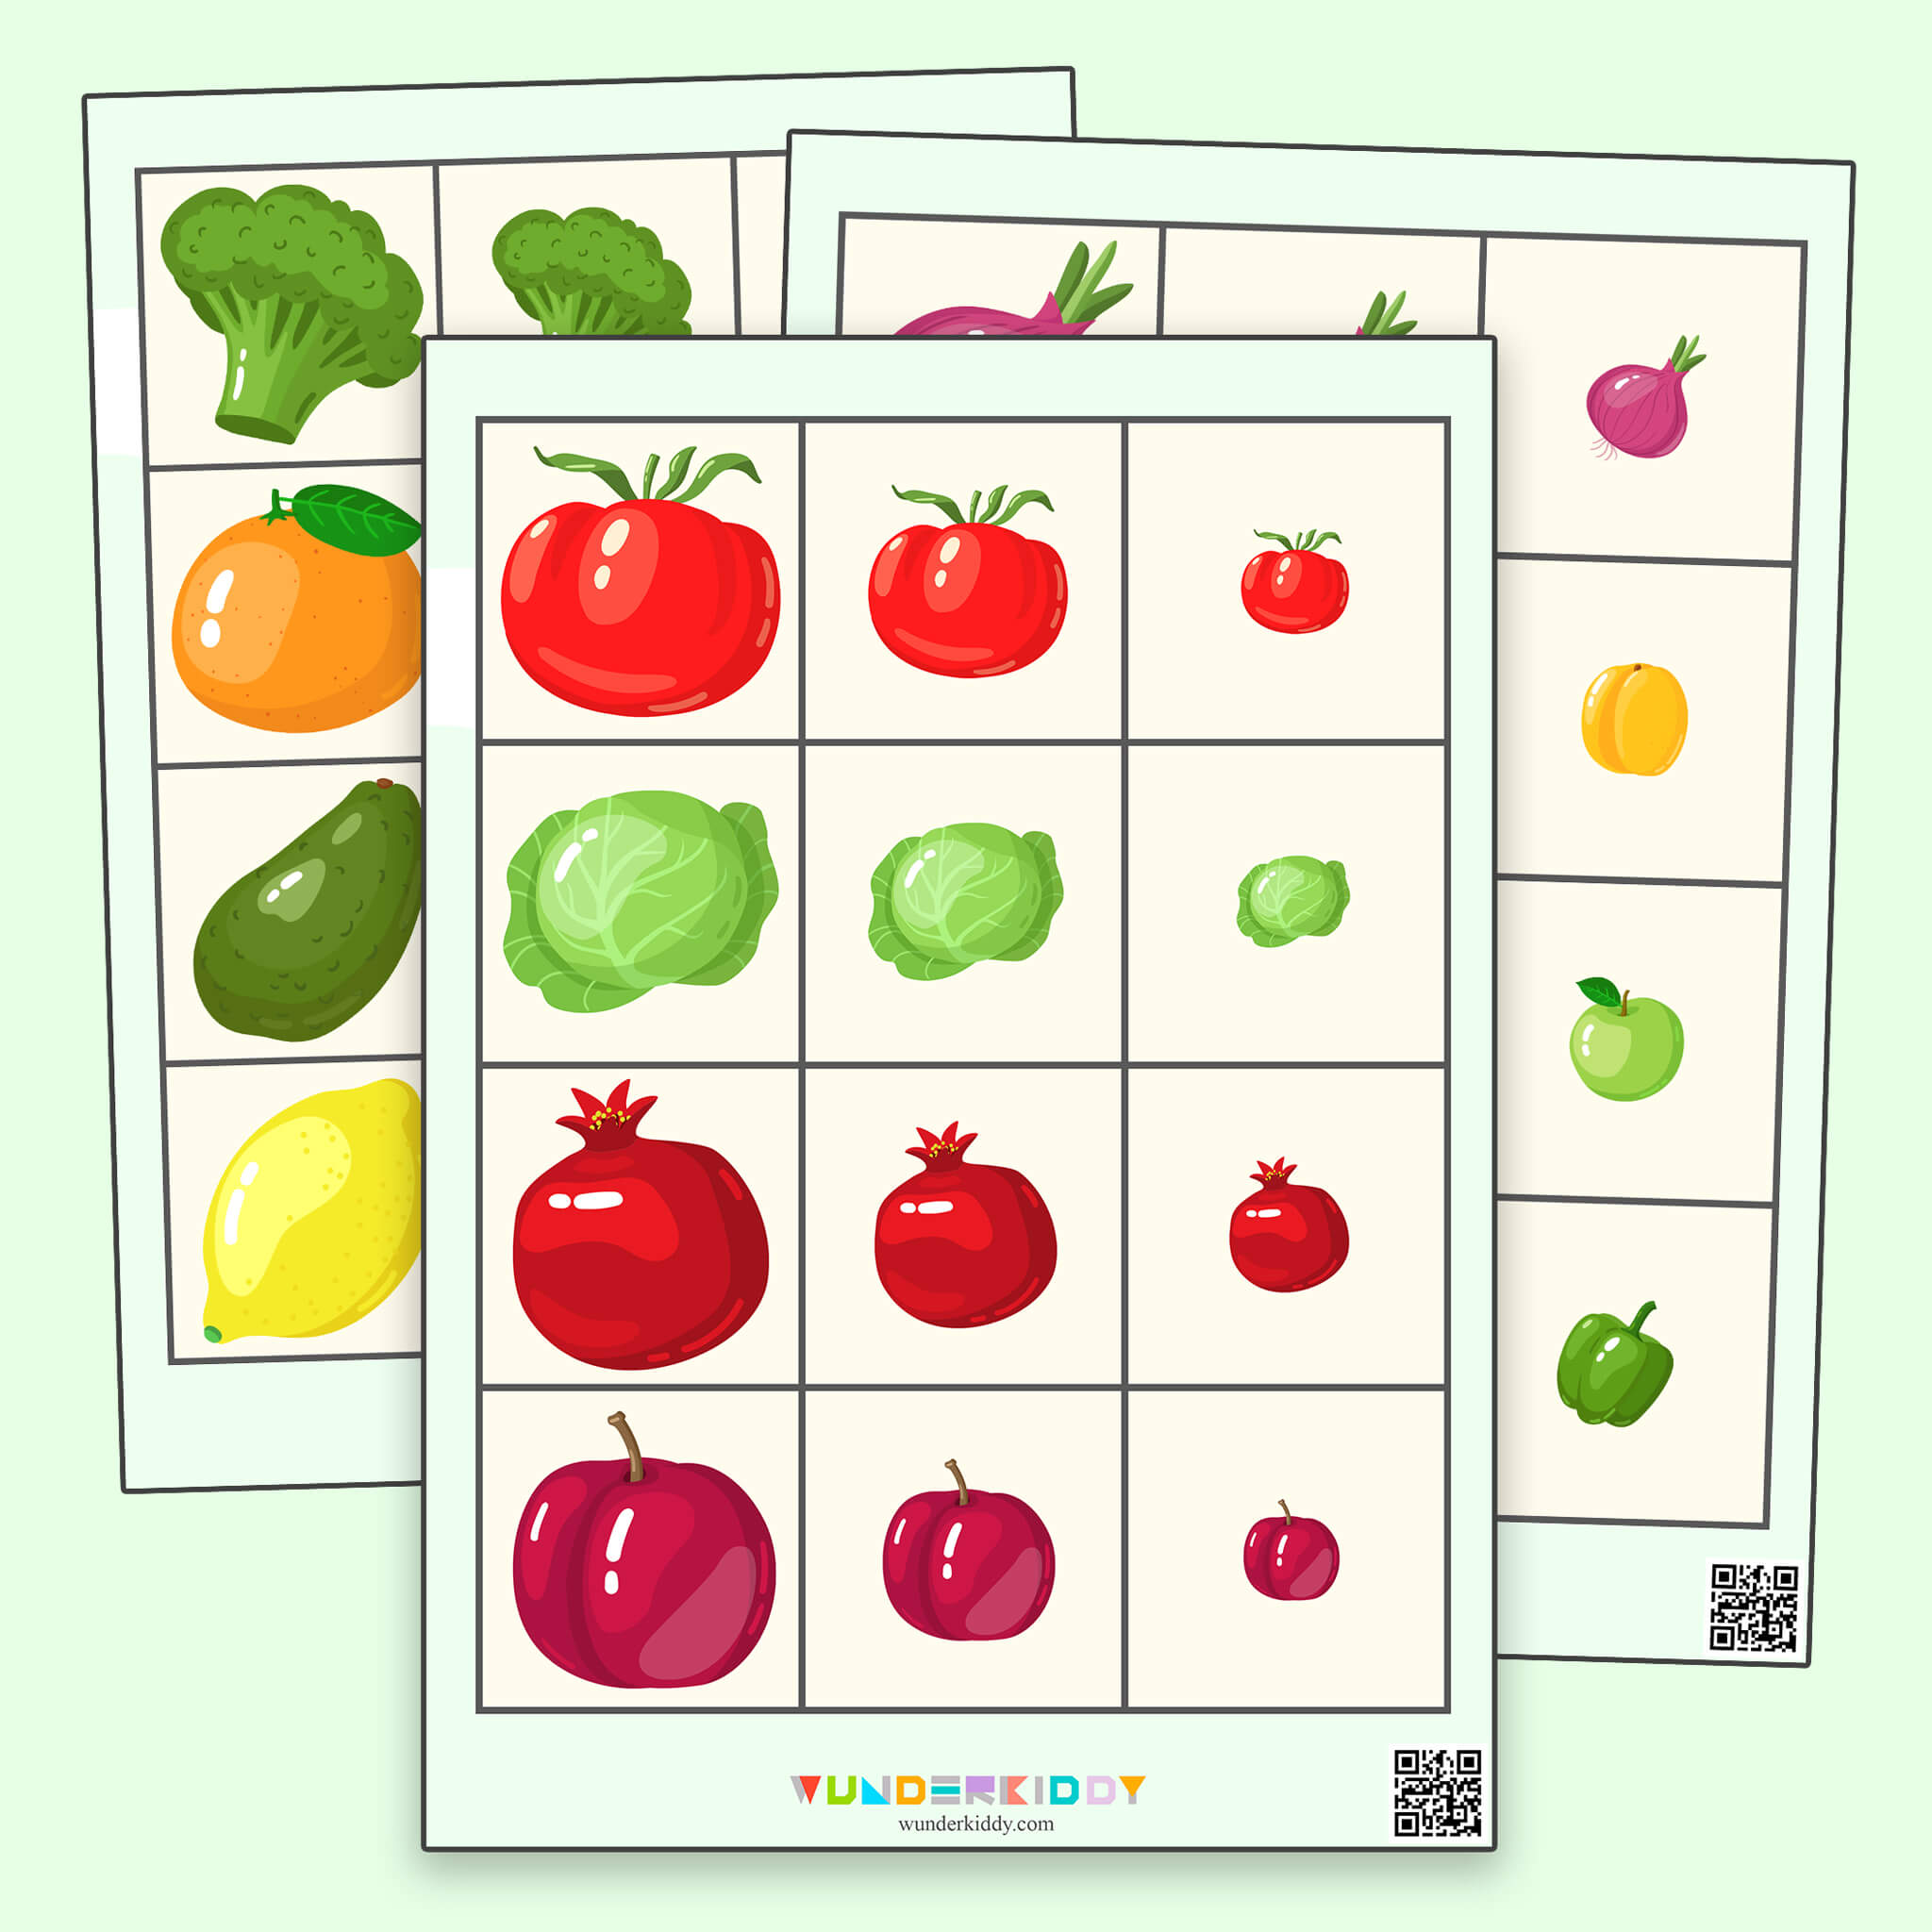 Worksheet «Fruits and Vegetables»